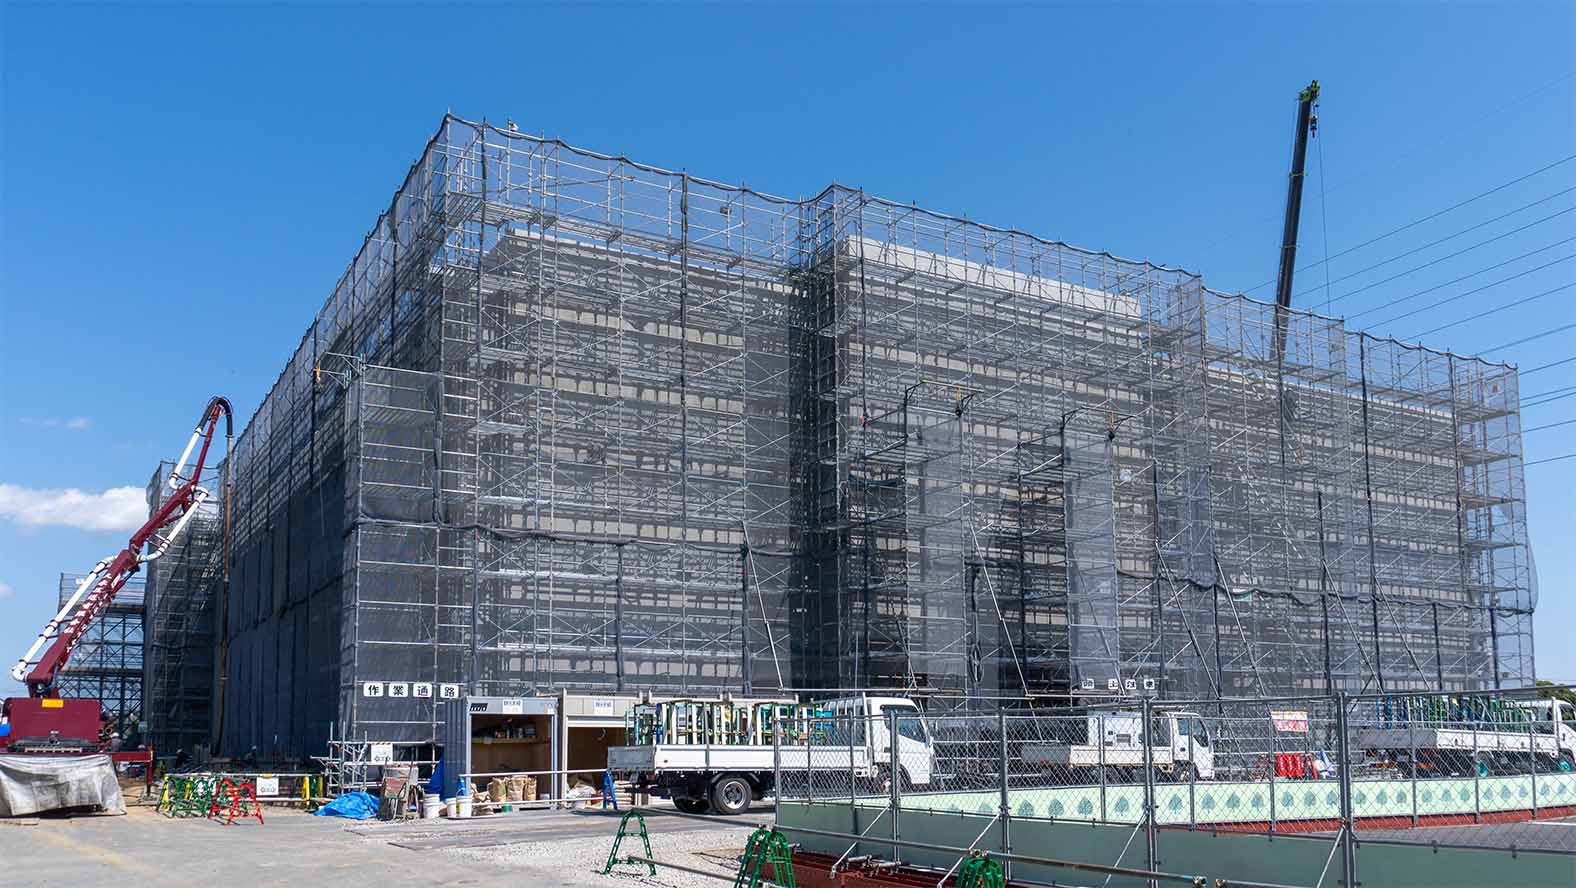 Roland DG's new headquarters building under construction